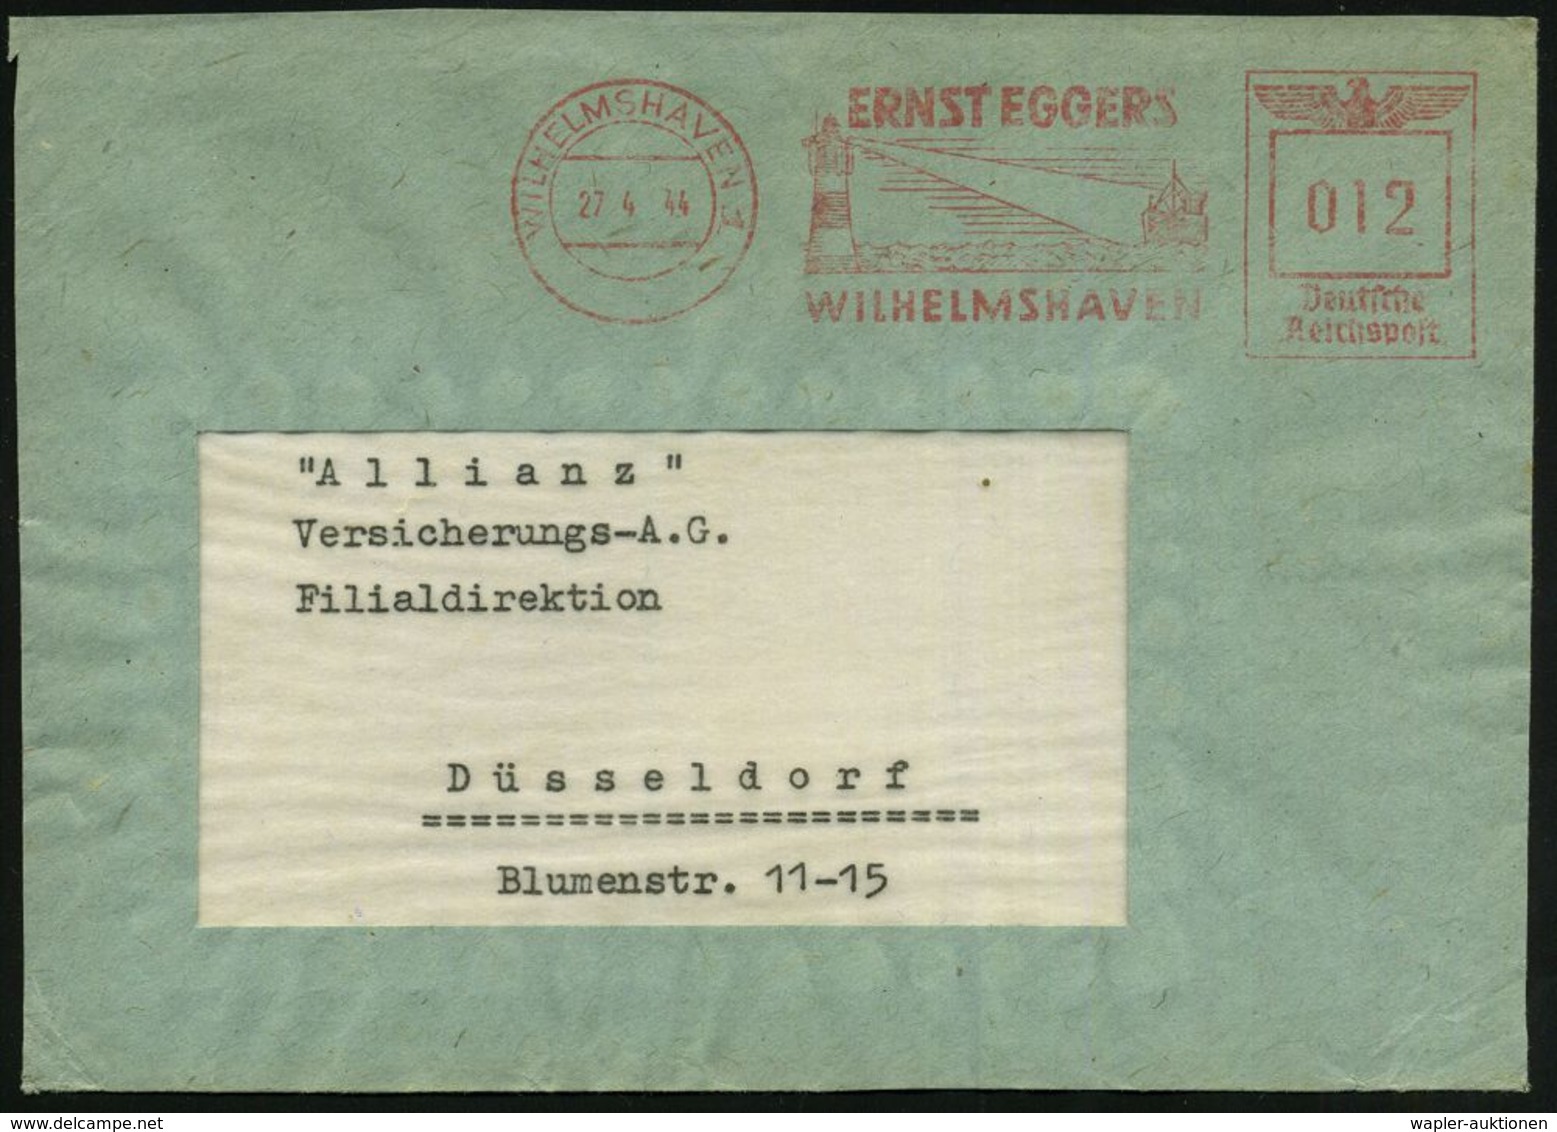 WILHELMSHAVEN 1/ ERNST EGGERS 1944 (27.4.) Dekorat. AFS = Leuchtturm (mit Lichtkegel Erfasst Schiff) Bedarfs-Vorderseite - Faros